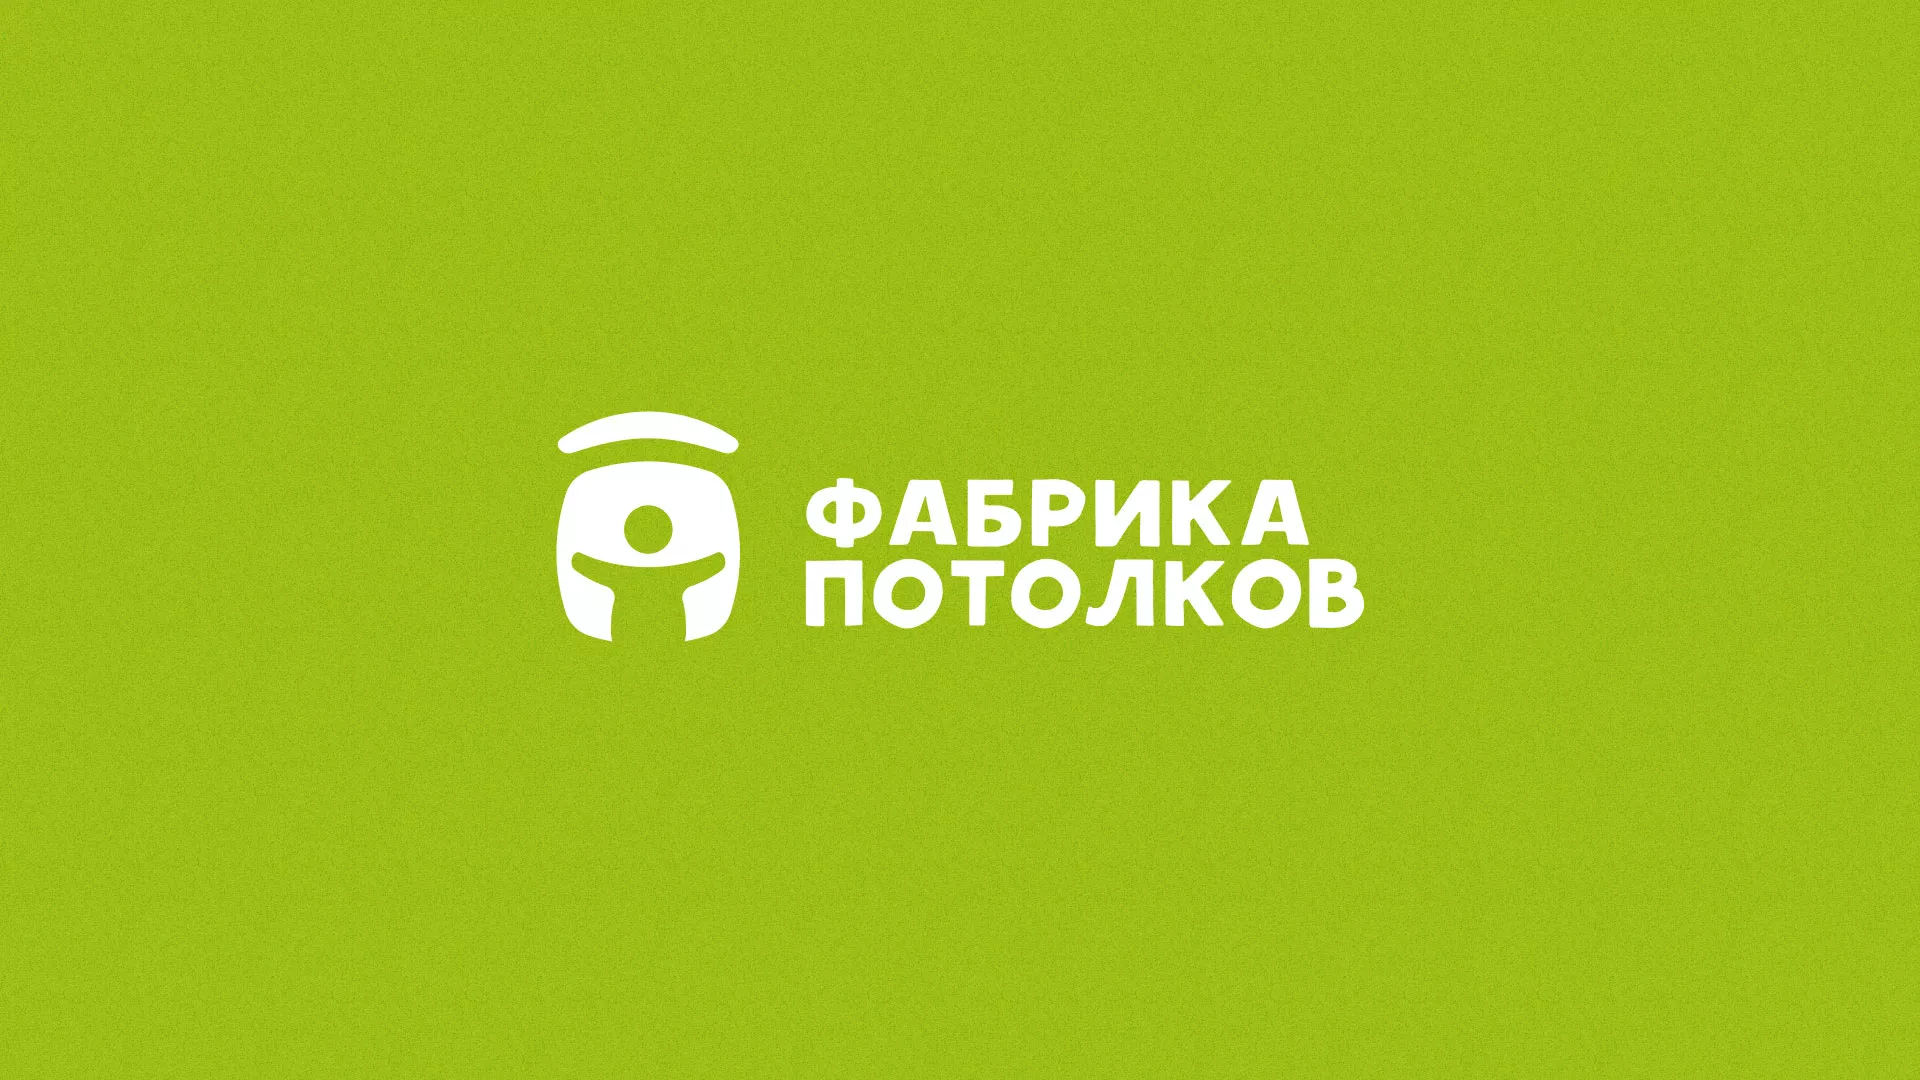 Разработка логотипа для производства натяжных потолков в Шахтёрске